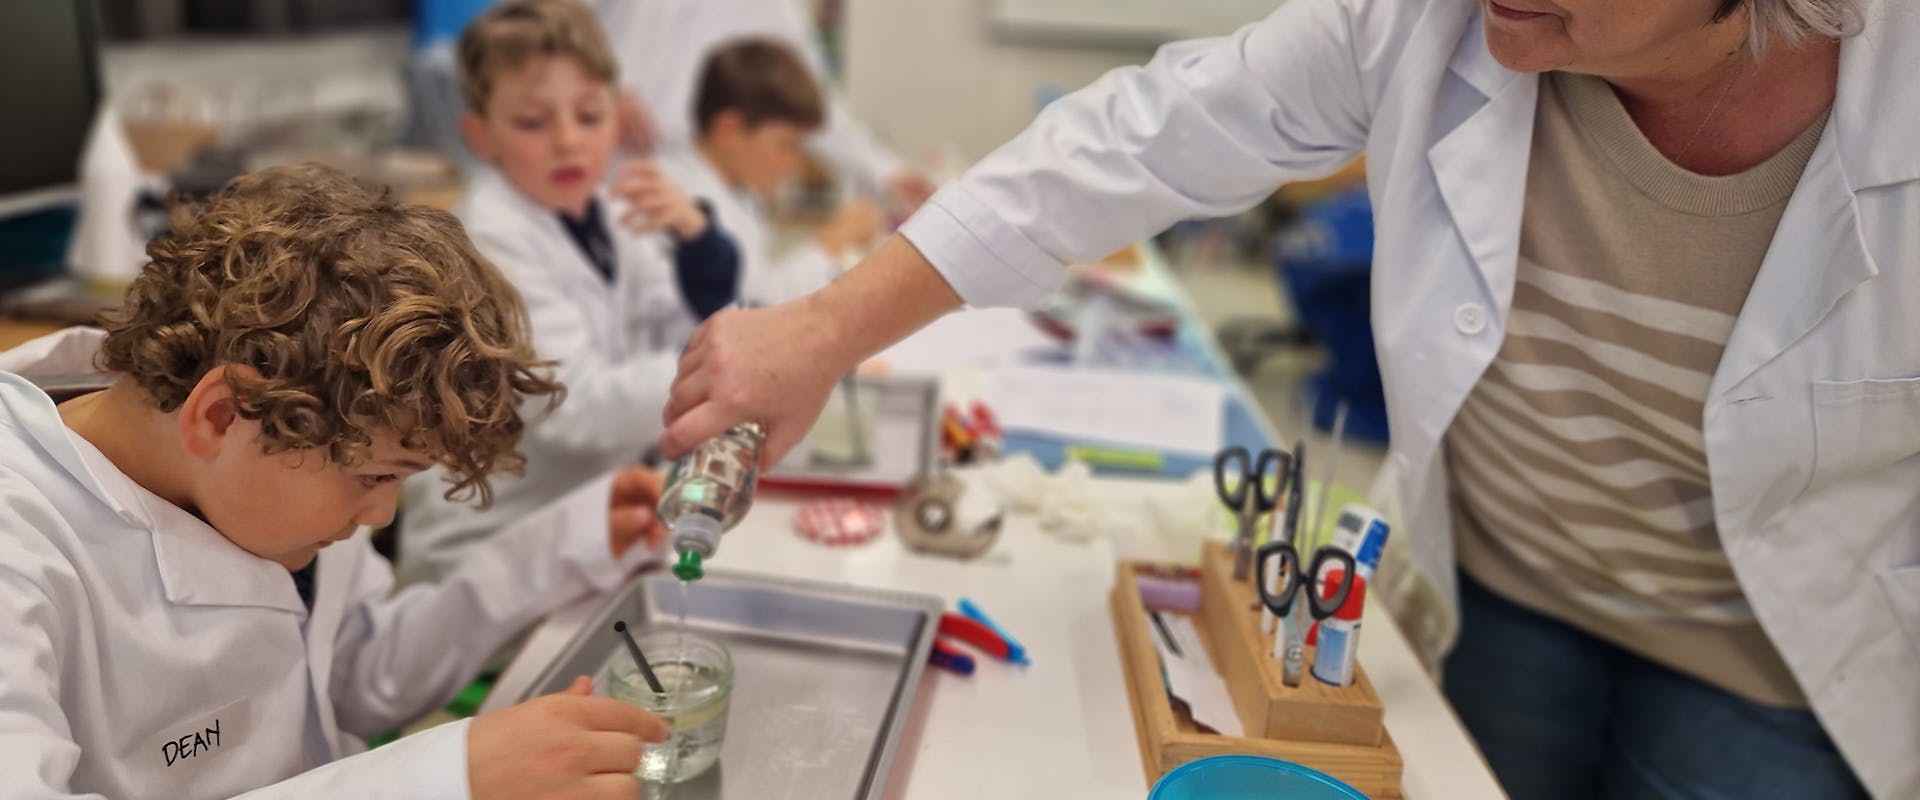 Reufa Junuzovic, experte au CSEM, guide les jeunes du Kinderlab dans leur expérience sur la surface des bulles de savons.